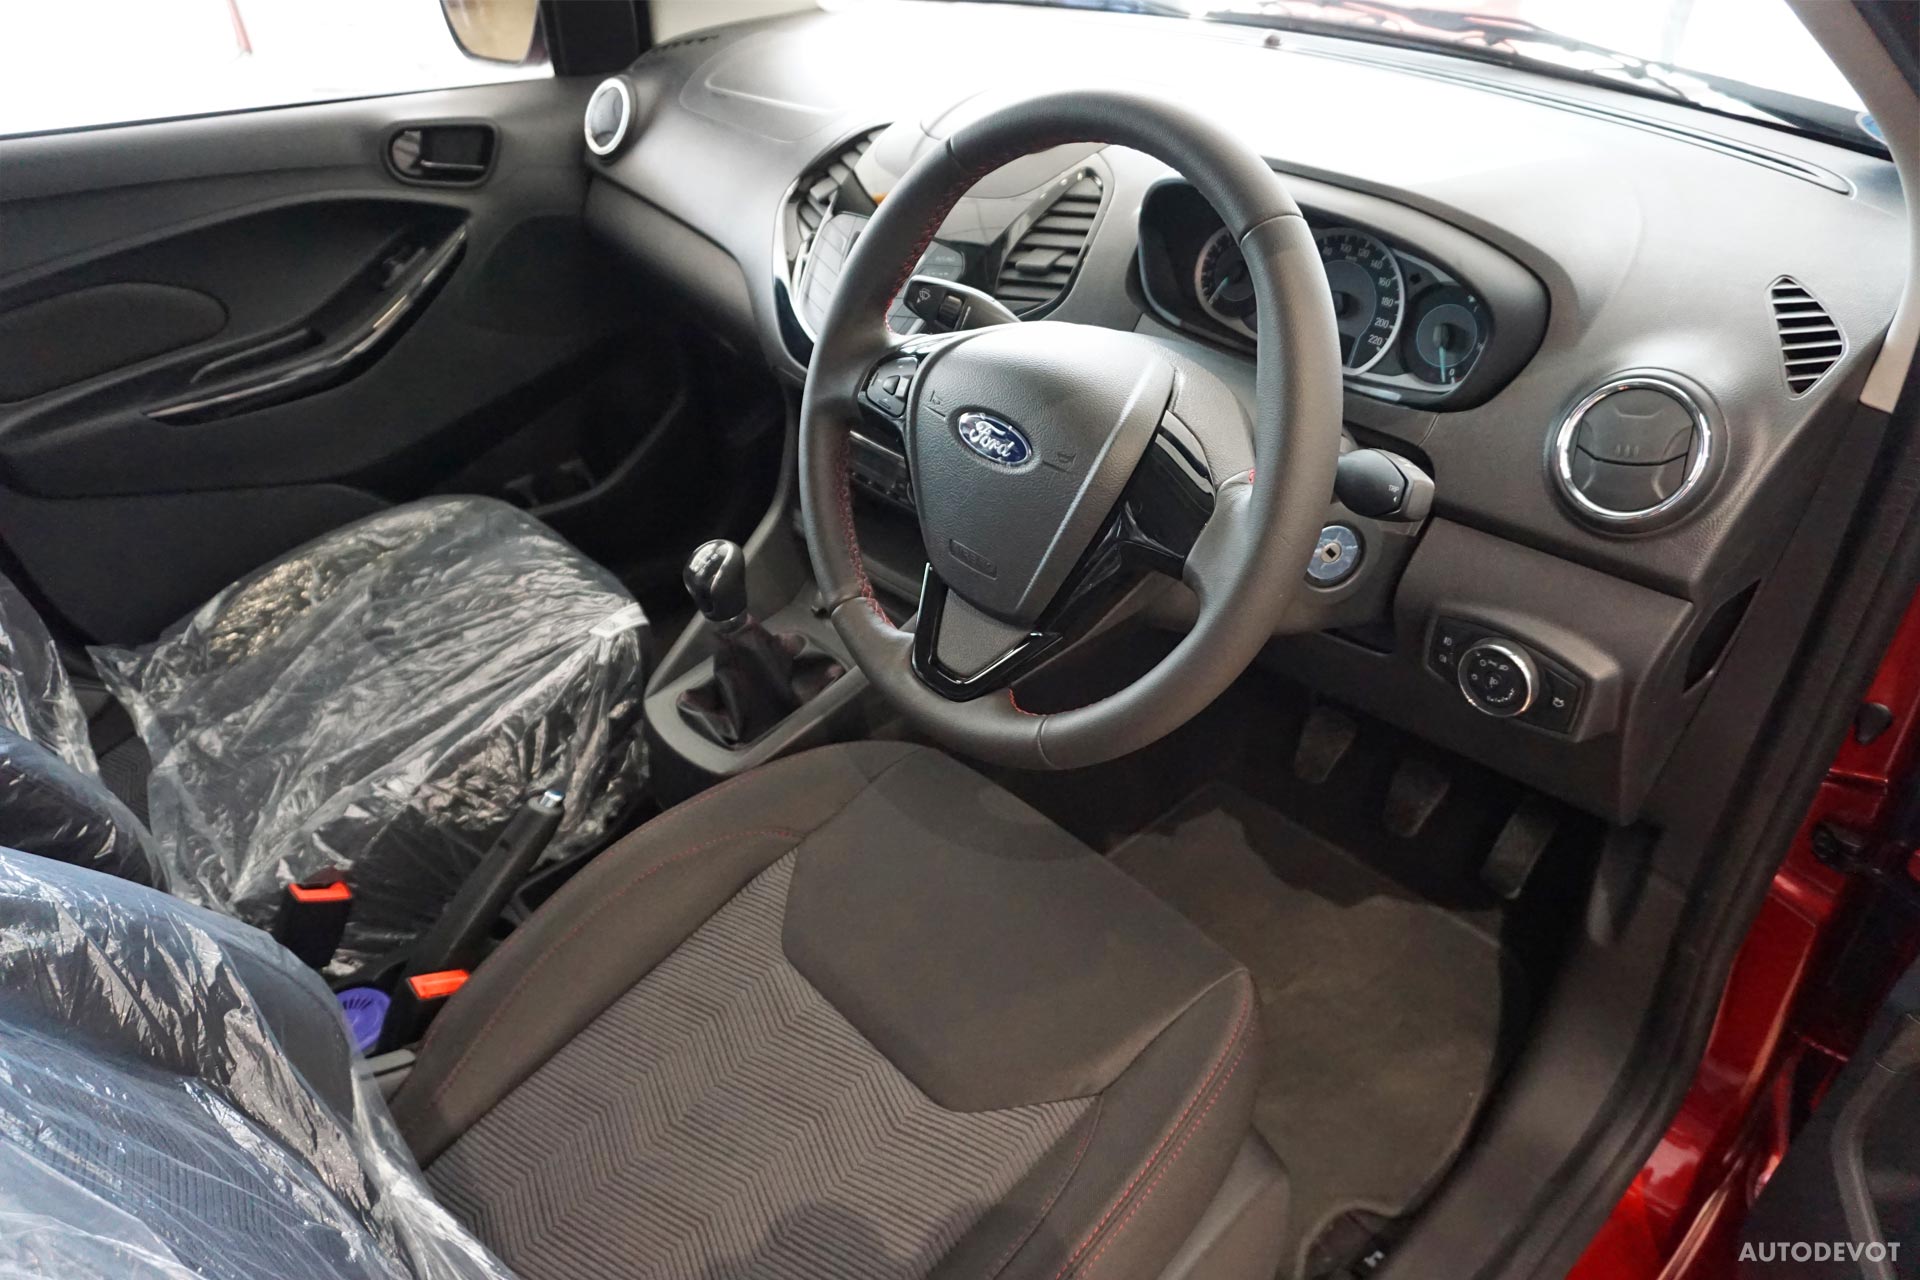 Ford-Figo-Sports-Edition-interior